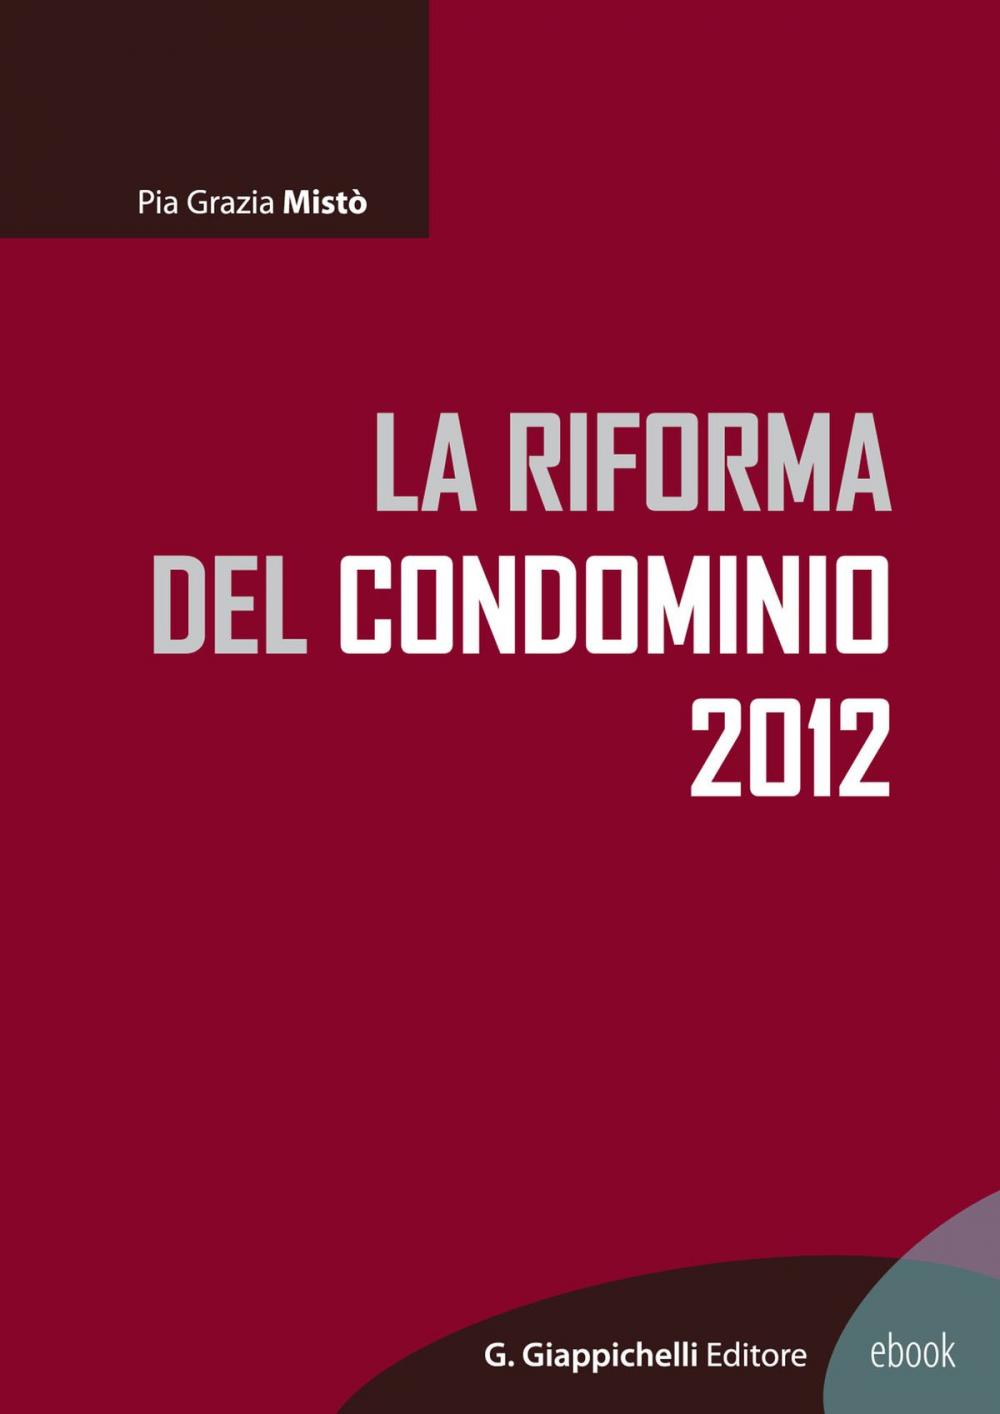 Big bigCover of La riforma del condominio 2012